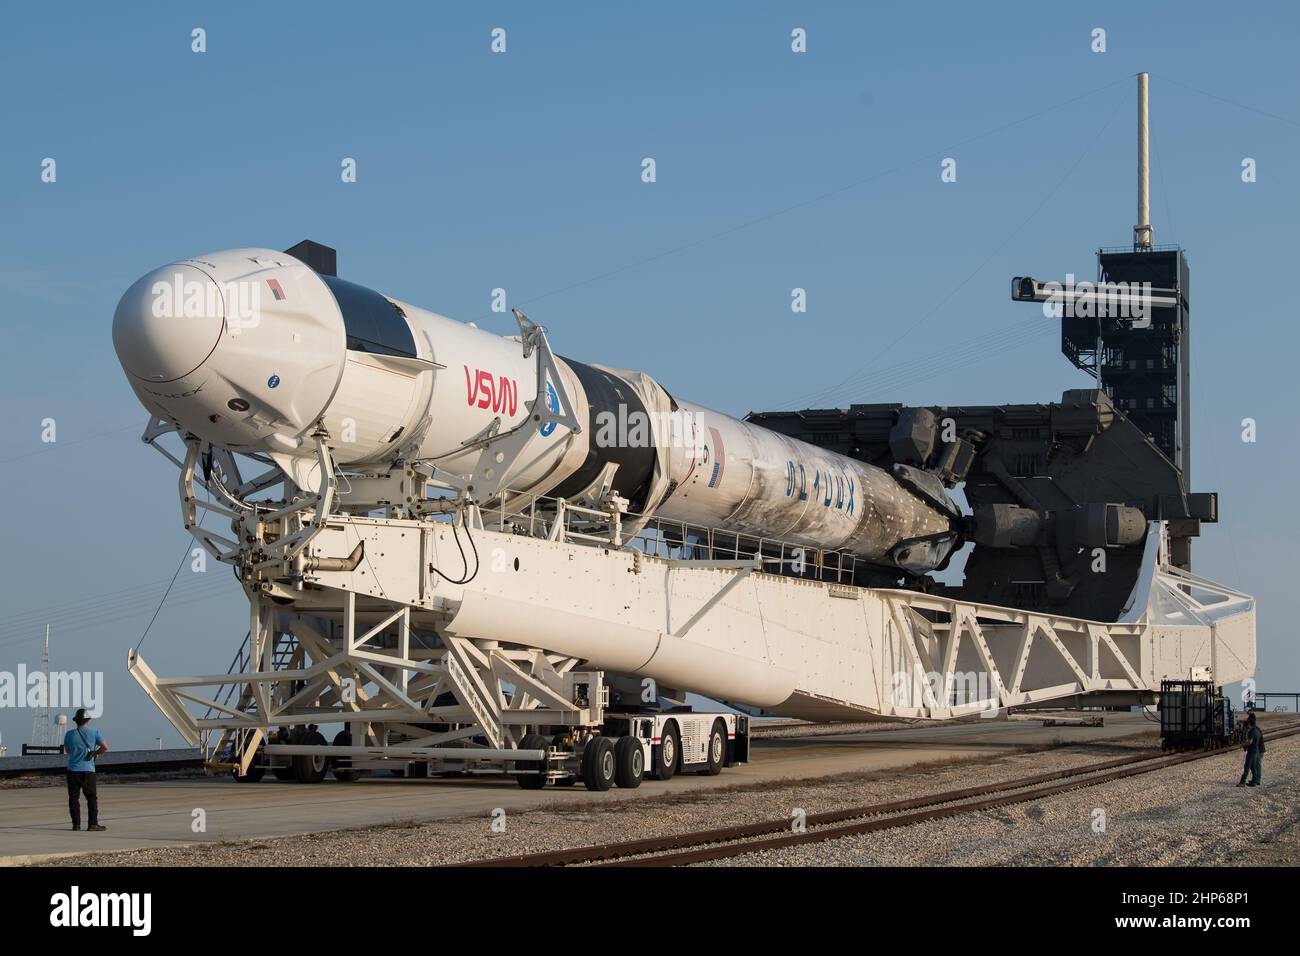 Eine SpaceX Falcon 9-Rakete mit der Crew Dragon-Sonde des Unternehmens an Bord wird beim Start des Launch Complex 39A gesehen, da die Vorbereitungen für die Crew-2-Mission am Freitag, den 16. April 2021, im Kennedy Space Center der NASA in Florida fortgesetzt werden. Stockfoto